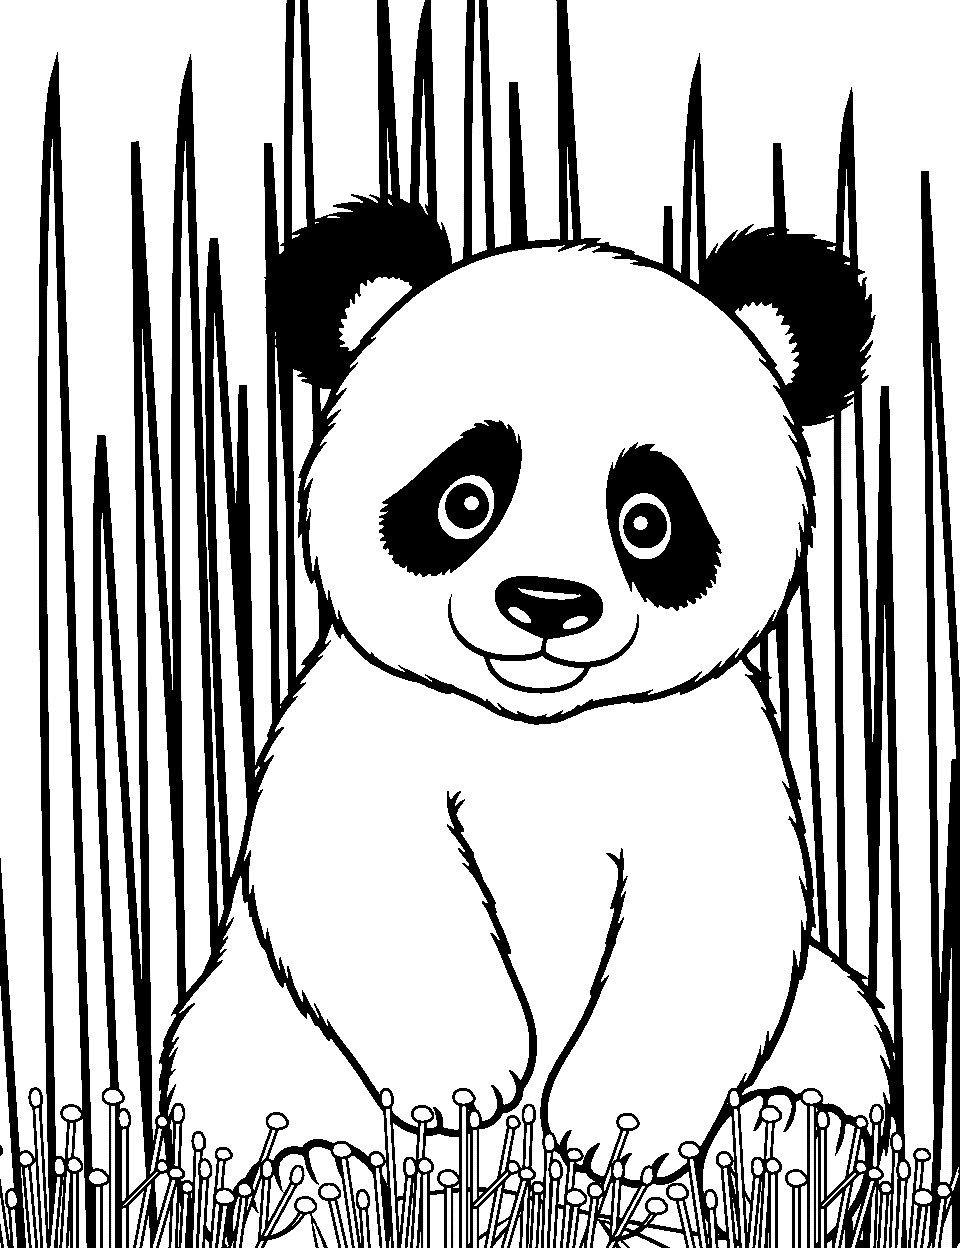 30 Panda Coloring Pages: Free Printable Sheets